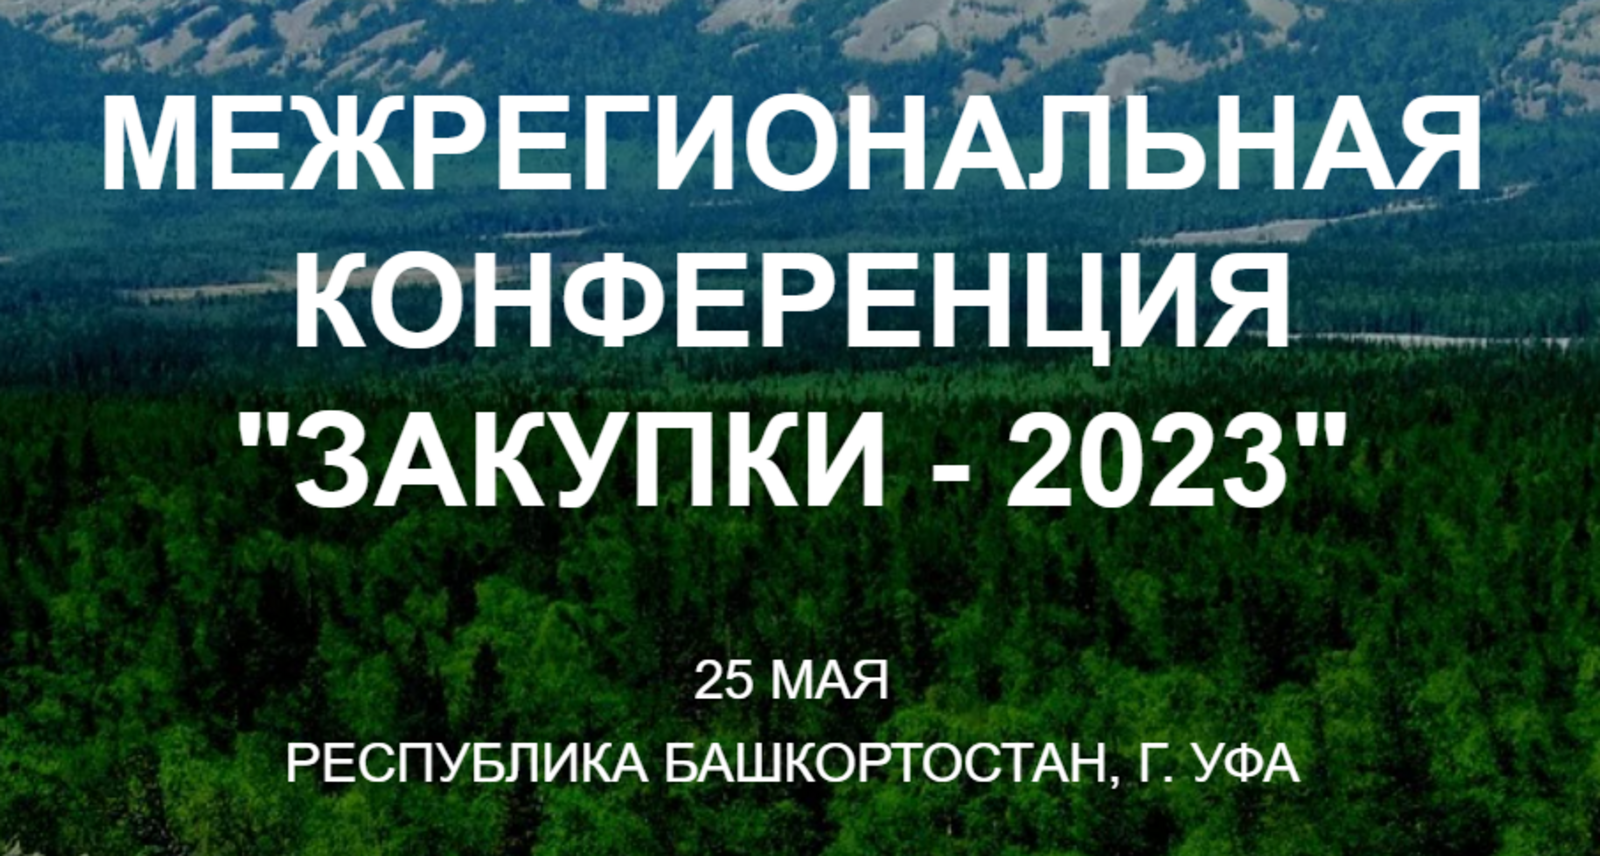 В Башкортостане пройдет межрегиональная конференция "Закупки-2023"